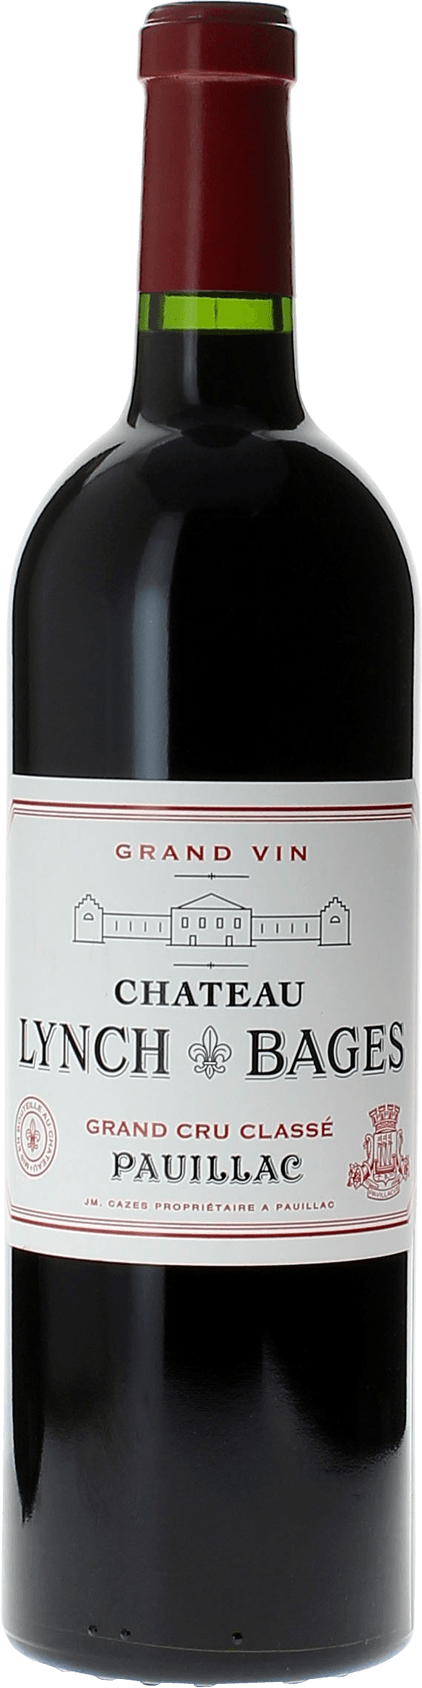 Lynch bages 1987 5 me Grand cru class Pauillac, Bordeaux rouge